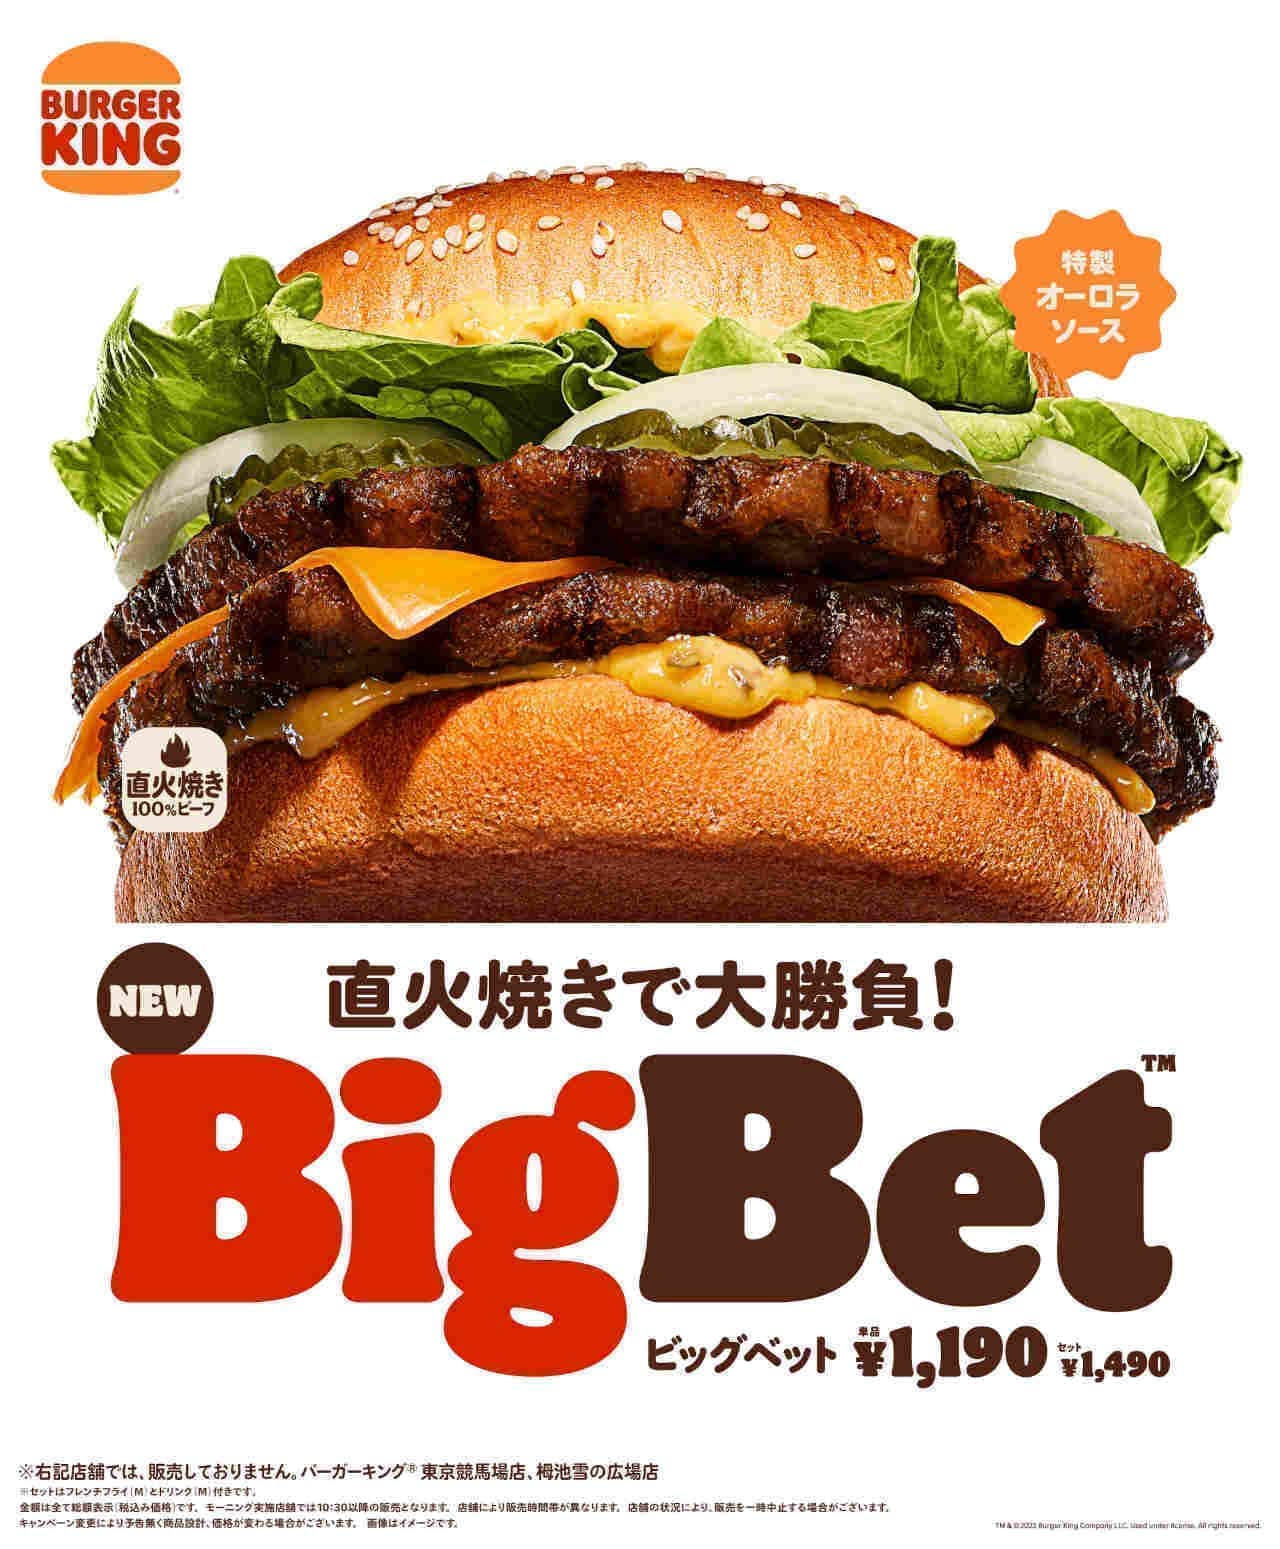 Burger King "BigBet".